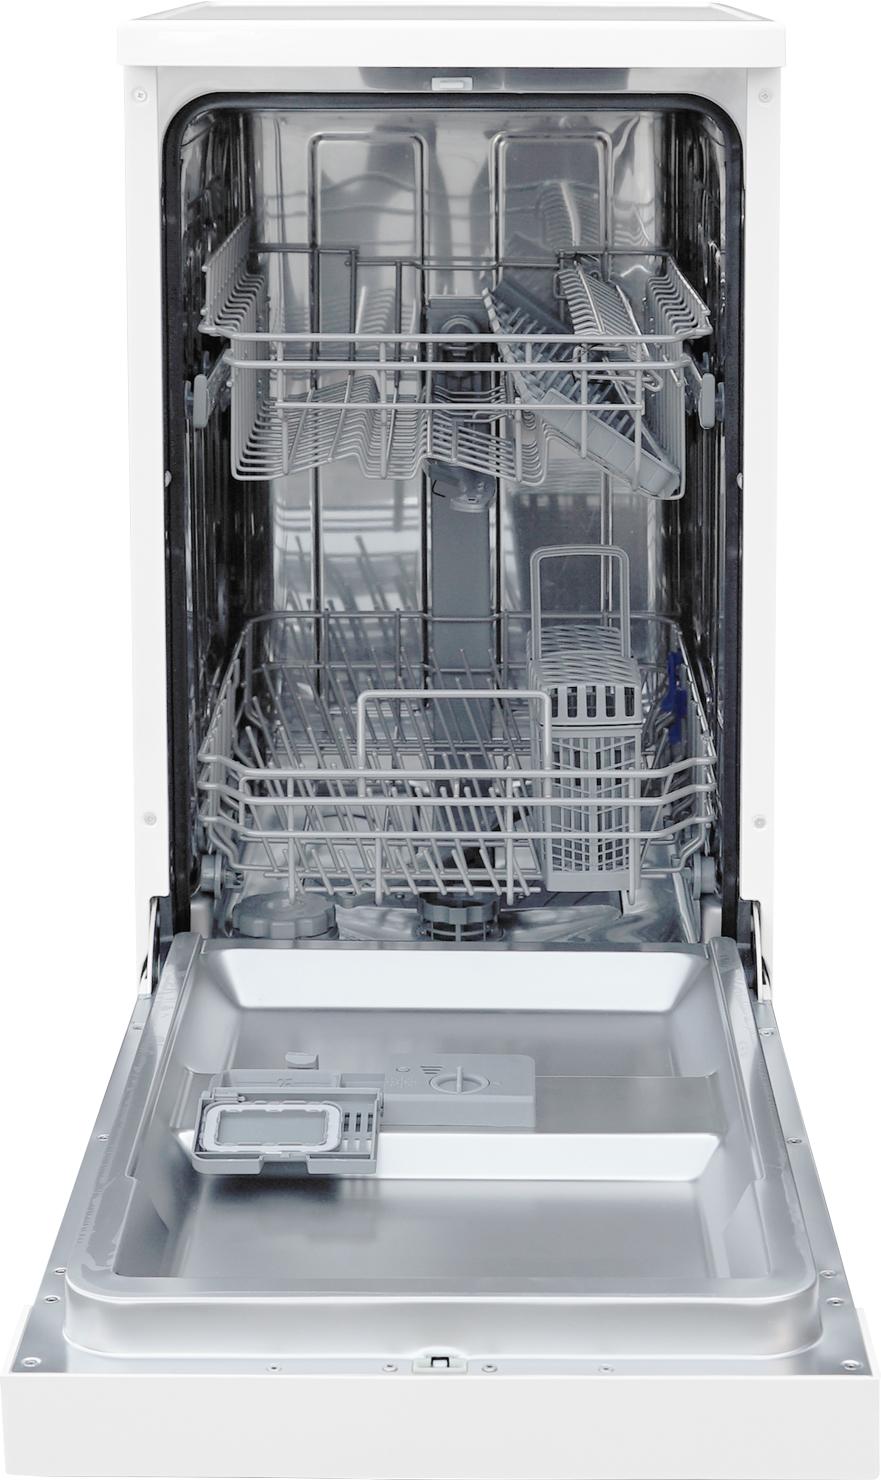 Selected image for TESLA Samostojeća mašina za pranje sudova WD431M bela